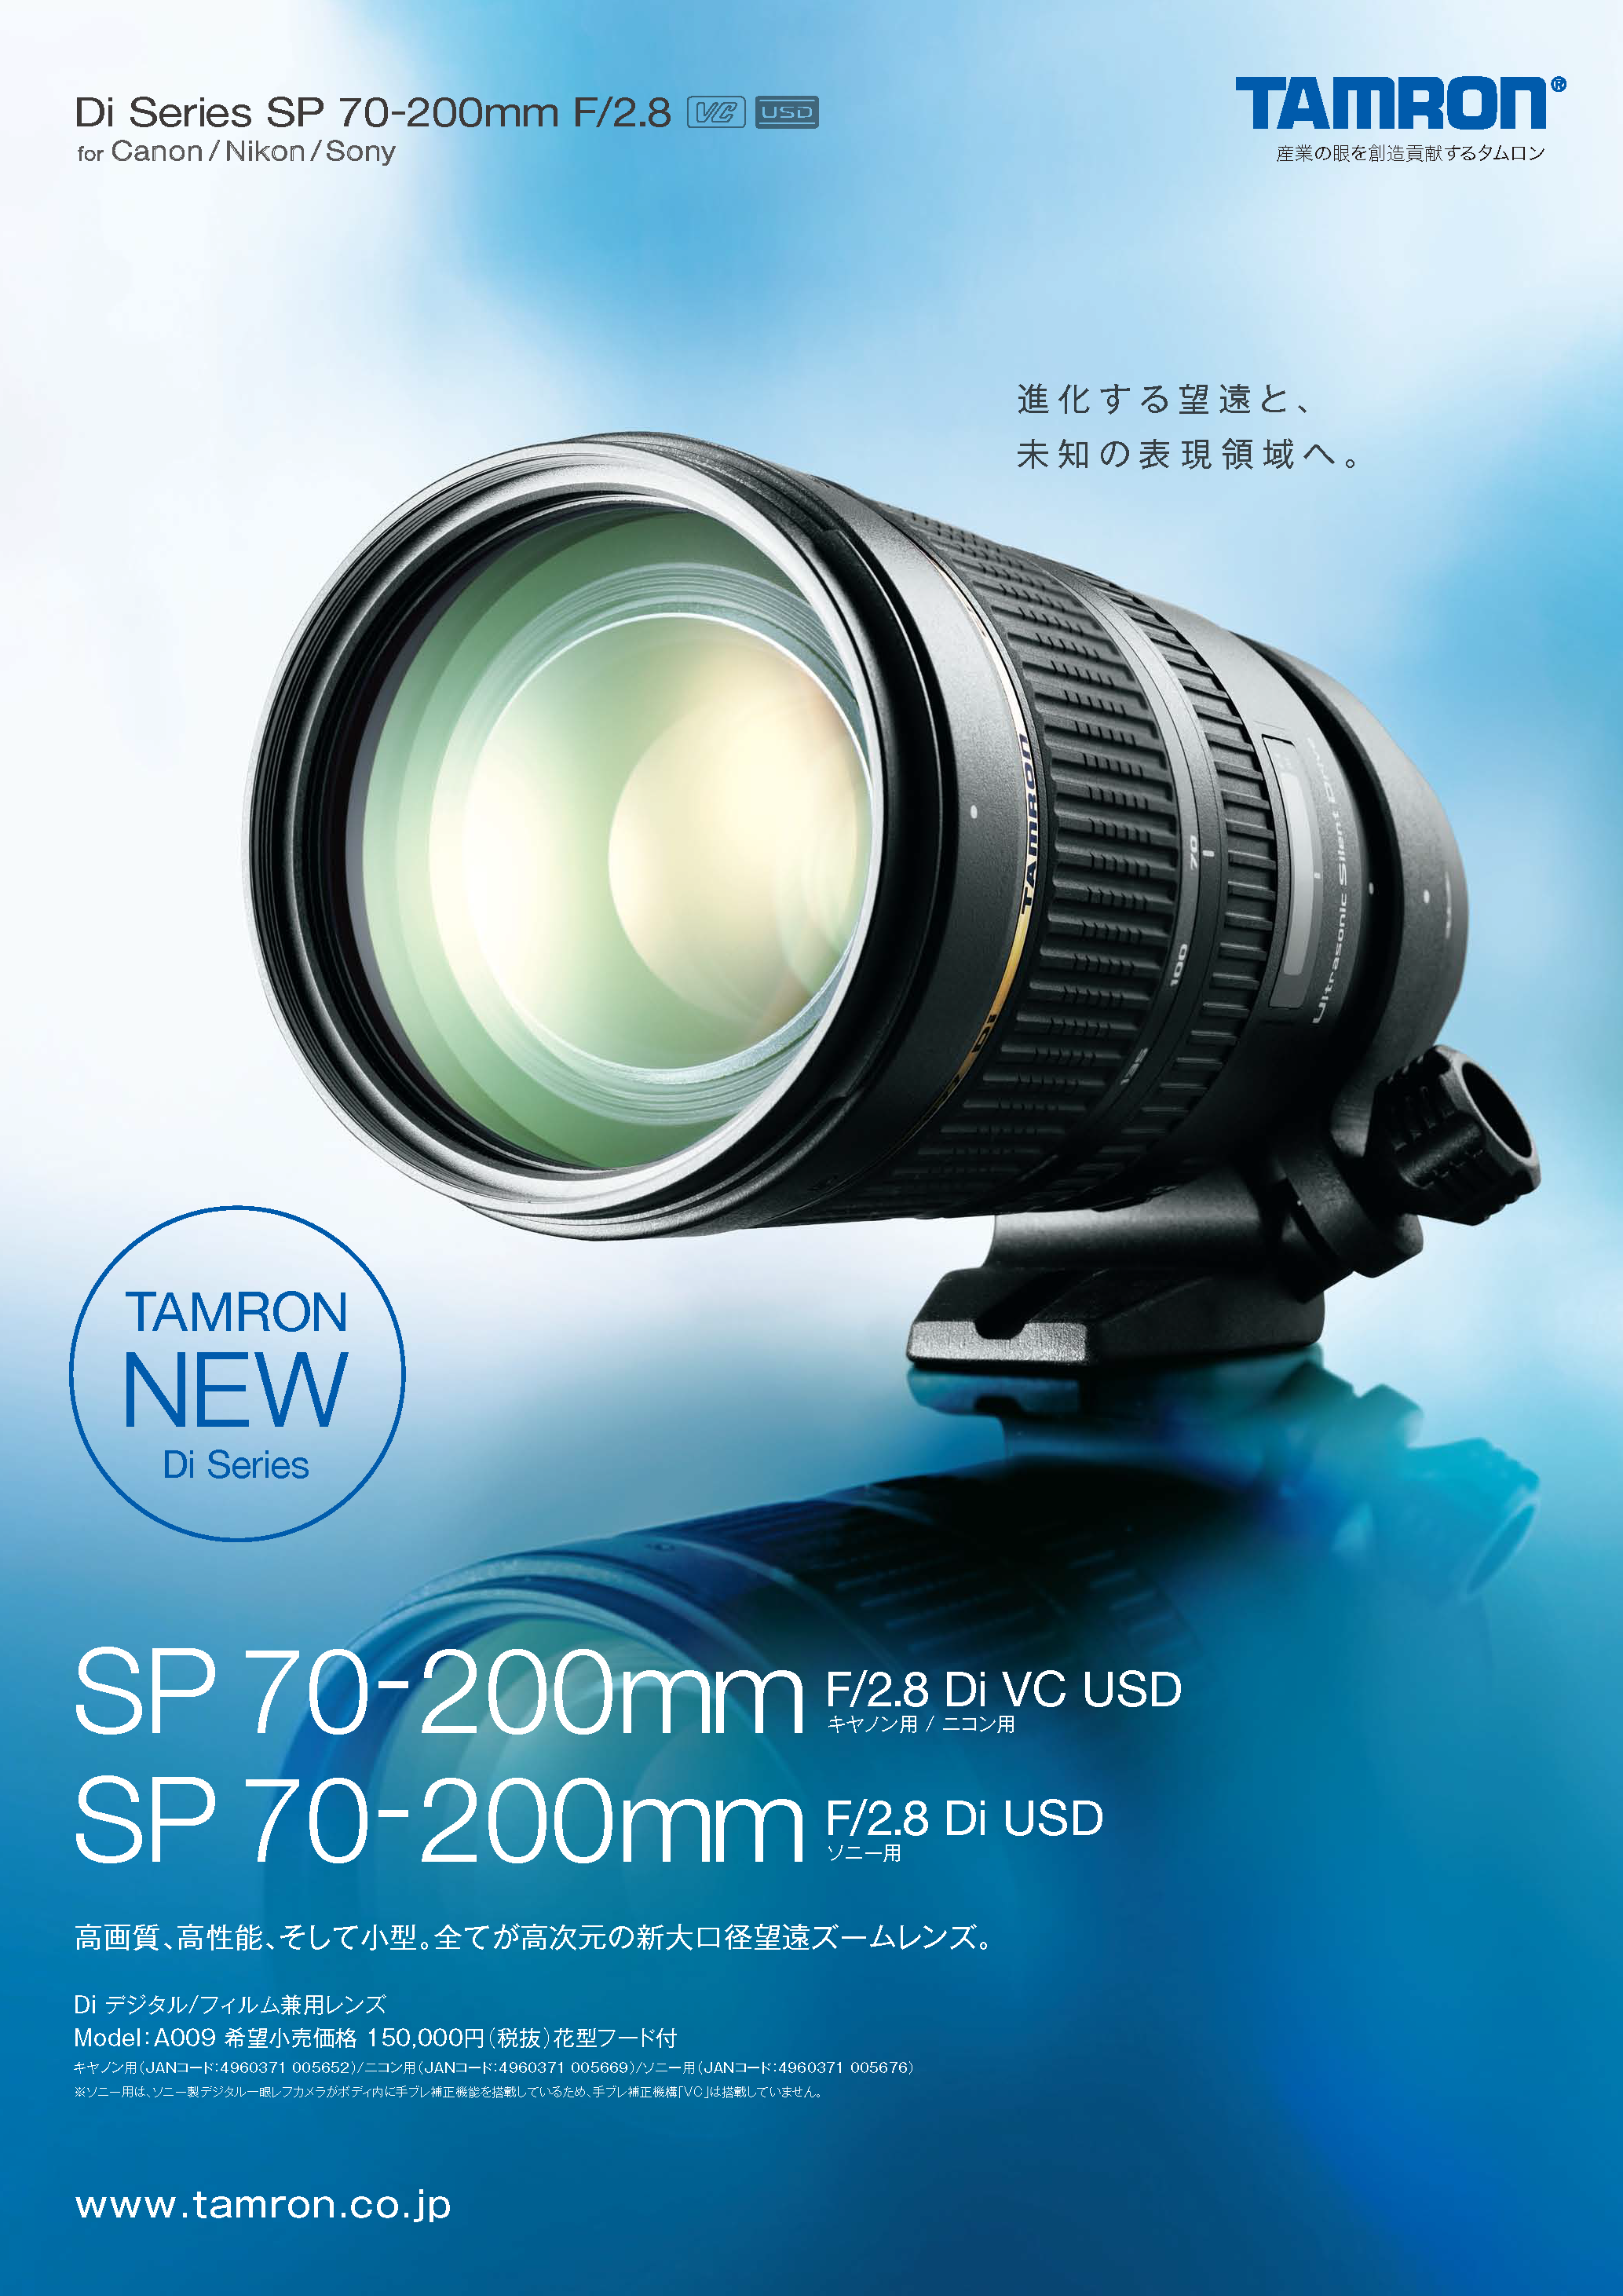 SP 70-200mm F/2.8 Di VC USD